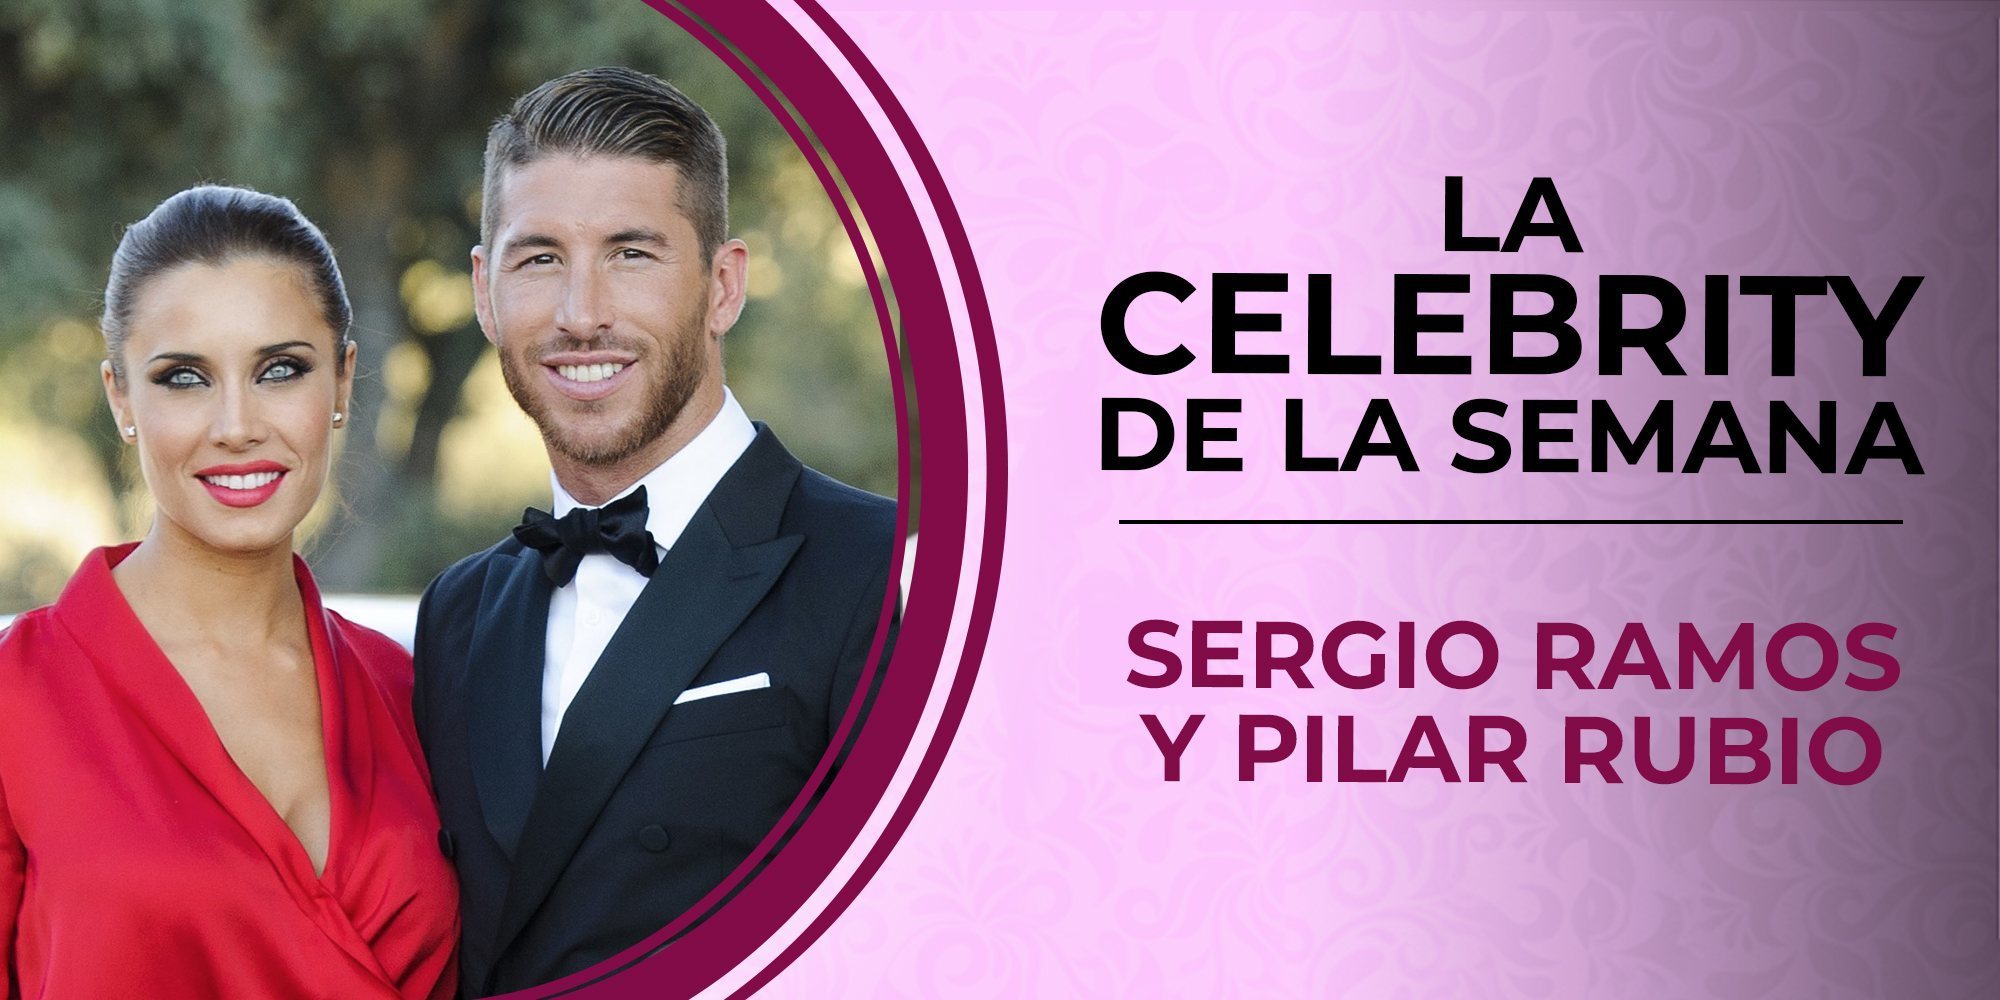 Pilar Rubio y Sergio Ramos, las celebrities de la semana tras anunciar su boda